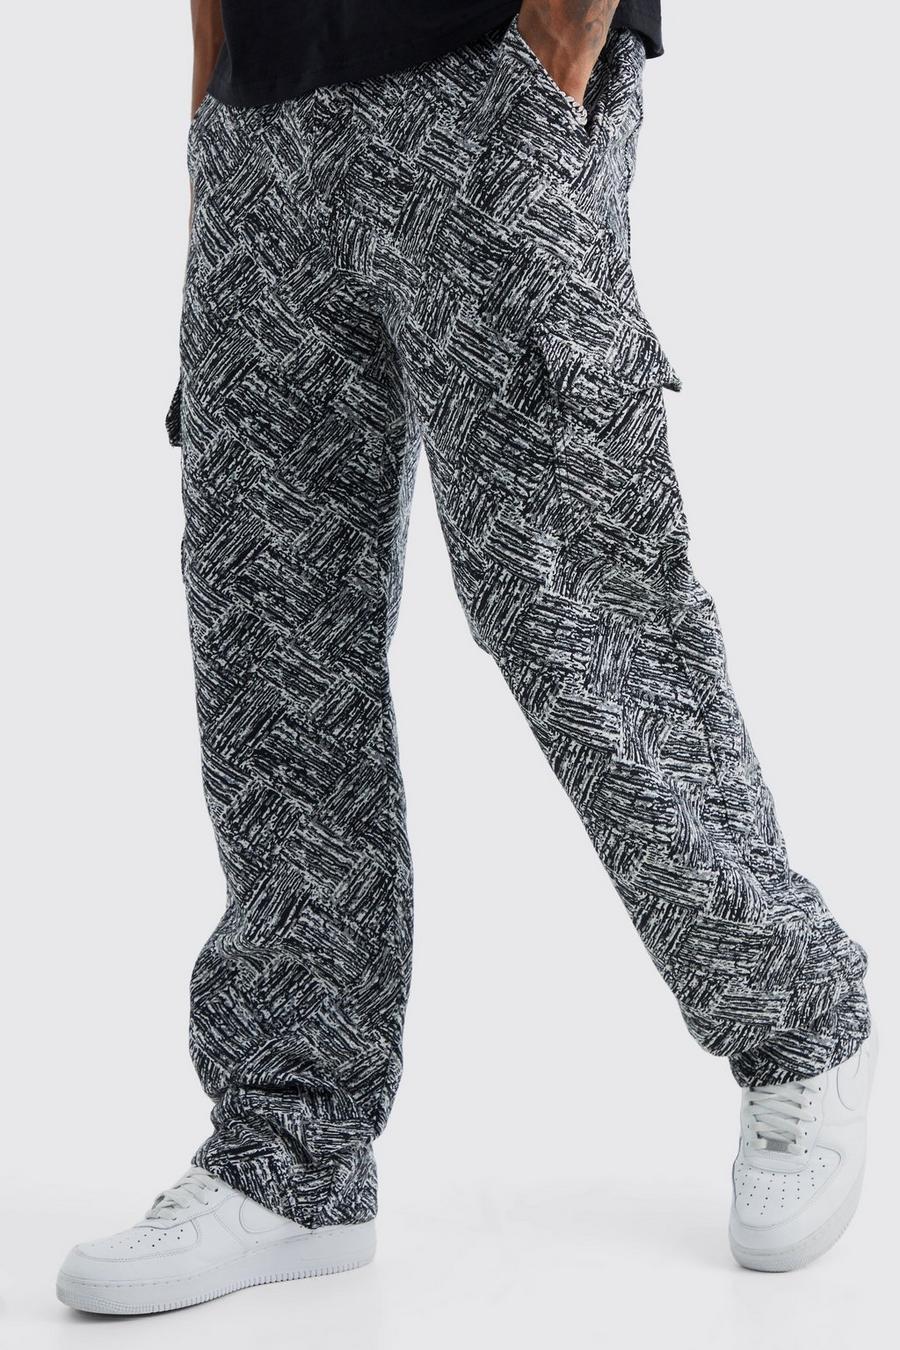 Pantalón Tall cargo holgado con estampado de tapiz, Charcoal